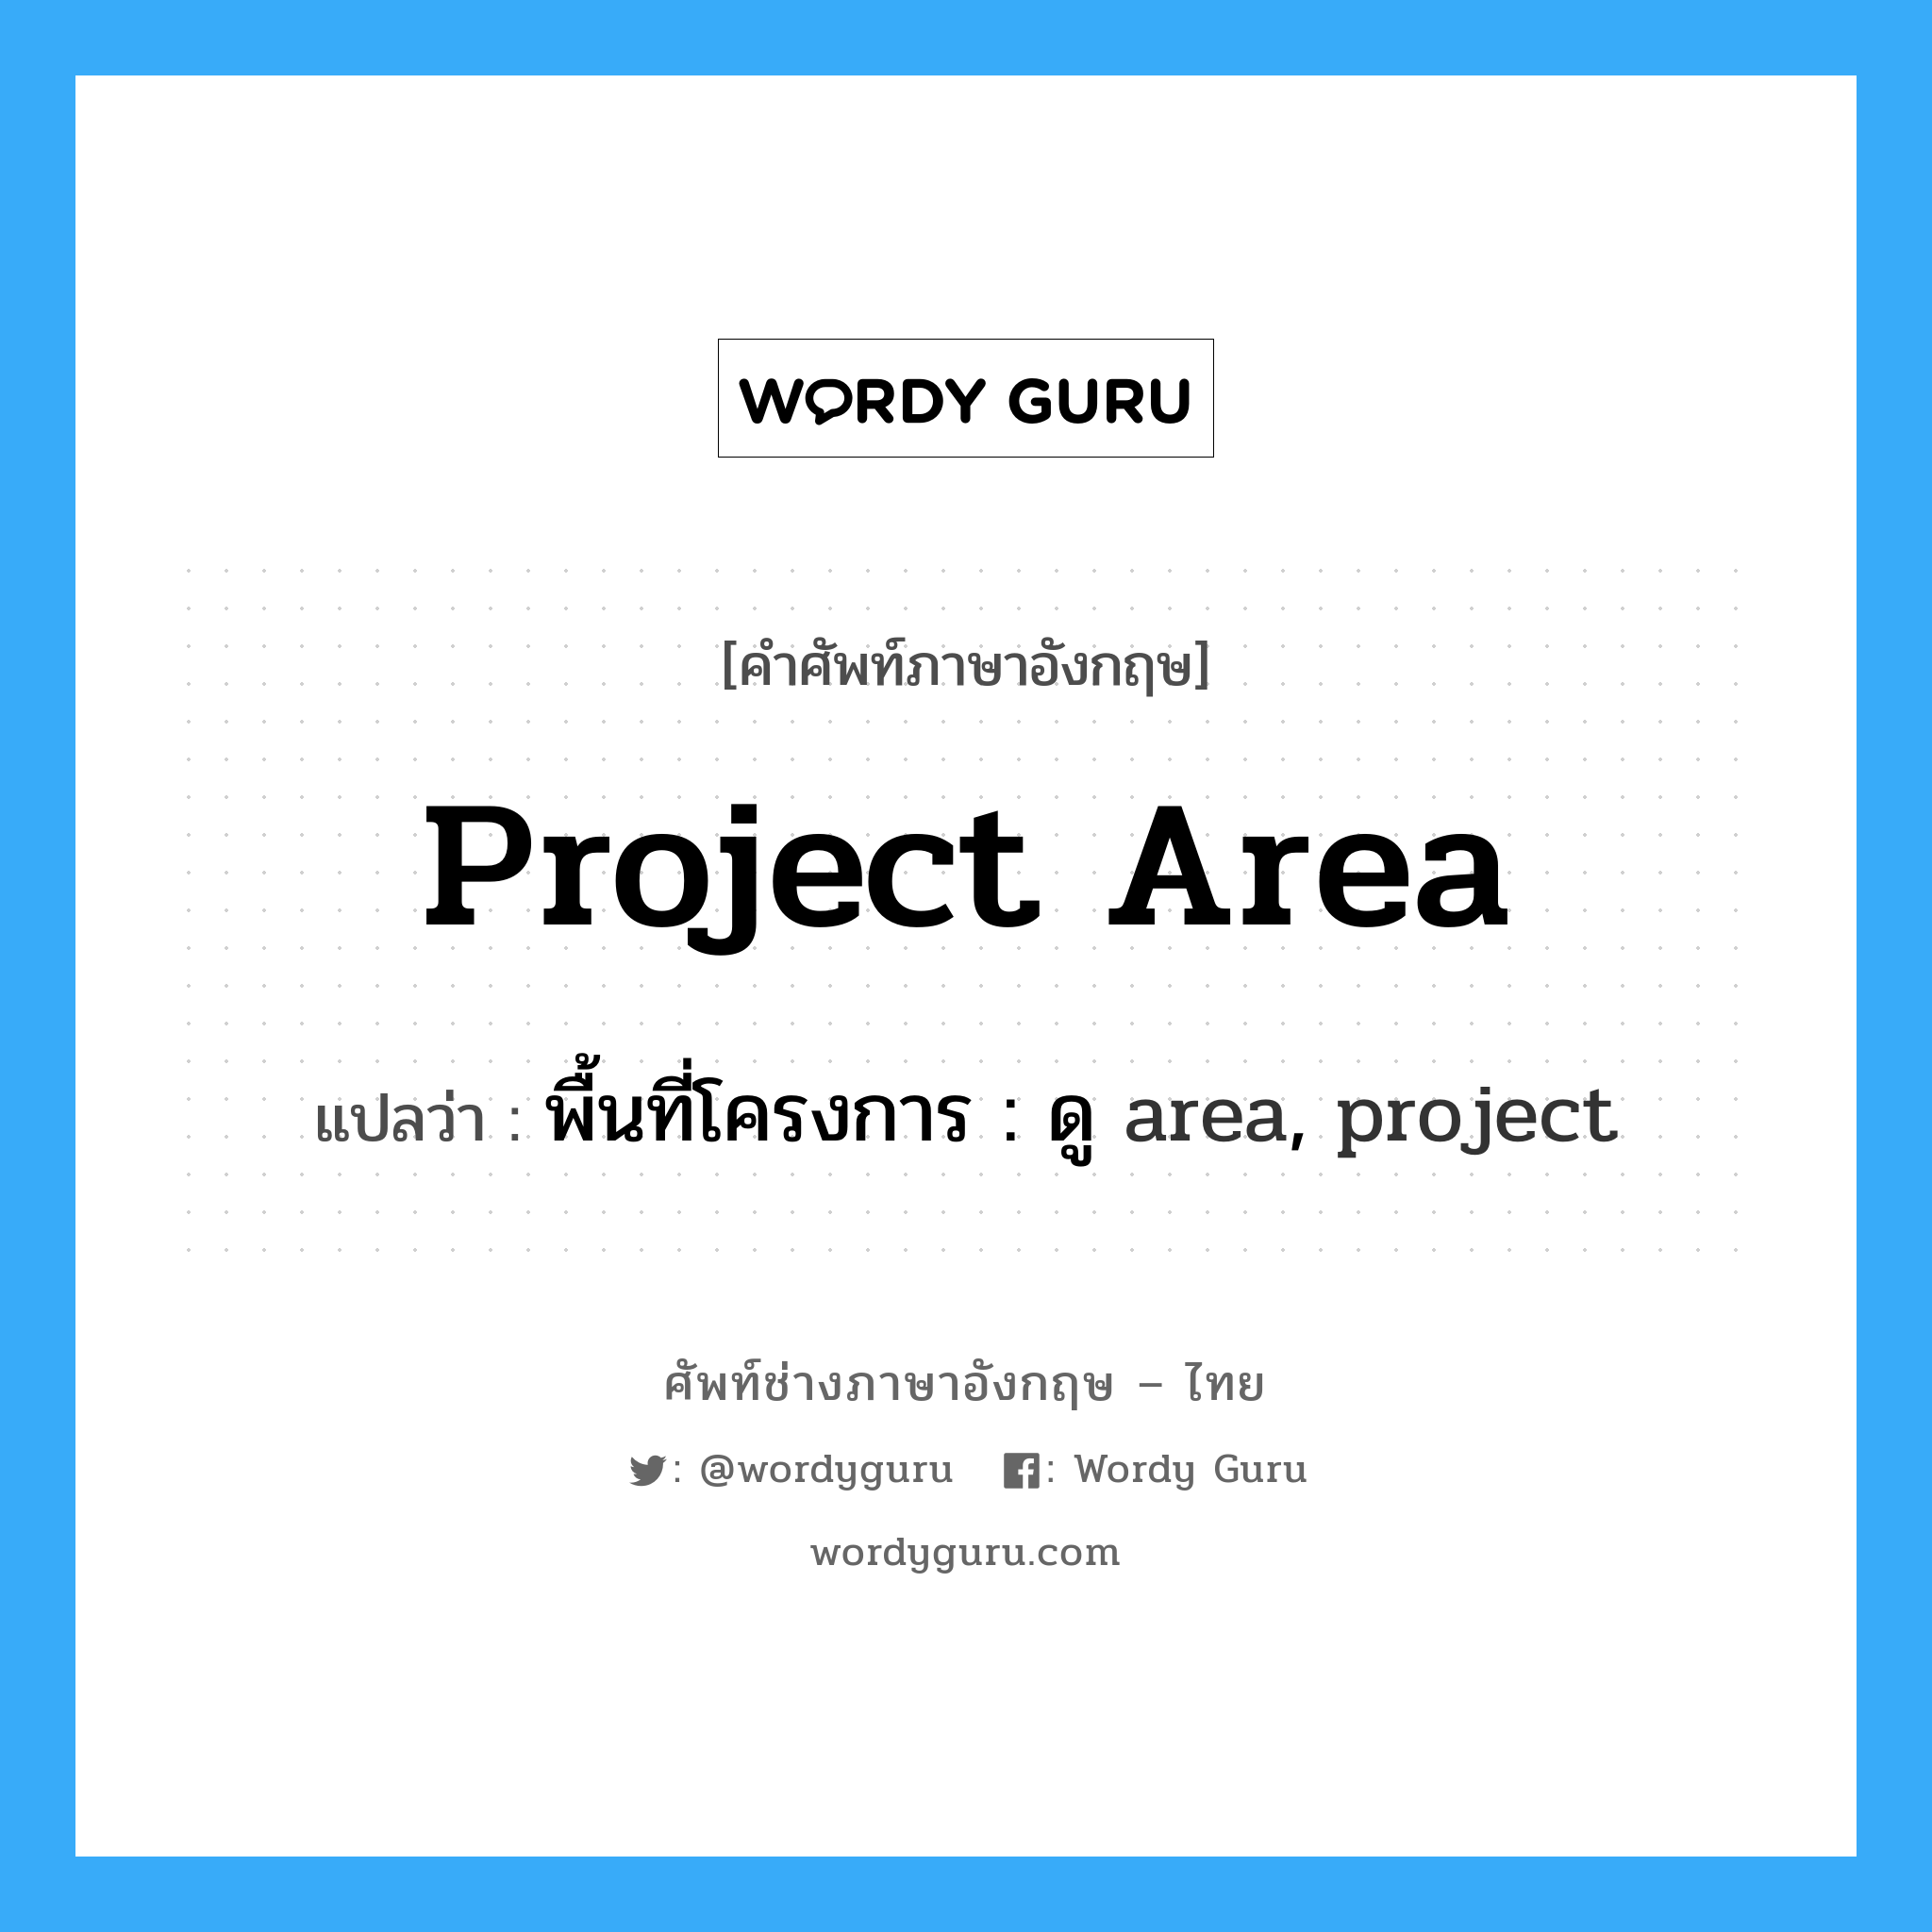 พื้นที่โครงการ : ดู area, project ภาษาอังกฤษ?, คำศัพท์ช่างภาษาอังกฤษ - ไทย พื้นที่โครงการ : ดู area, project คำศัพท์ภาษาอังกฤษ พื้นที่โครงการ : ดู area, project แปลว่า project area